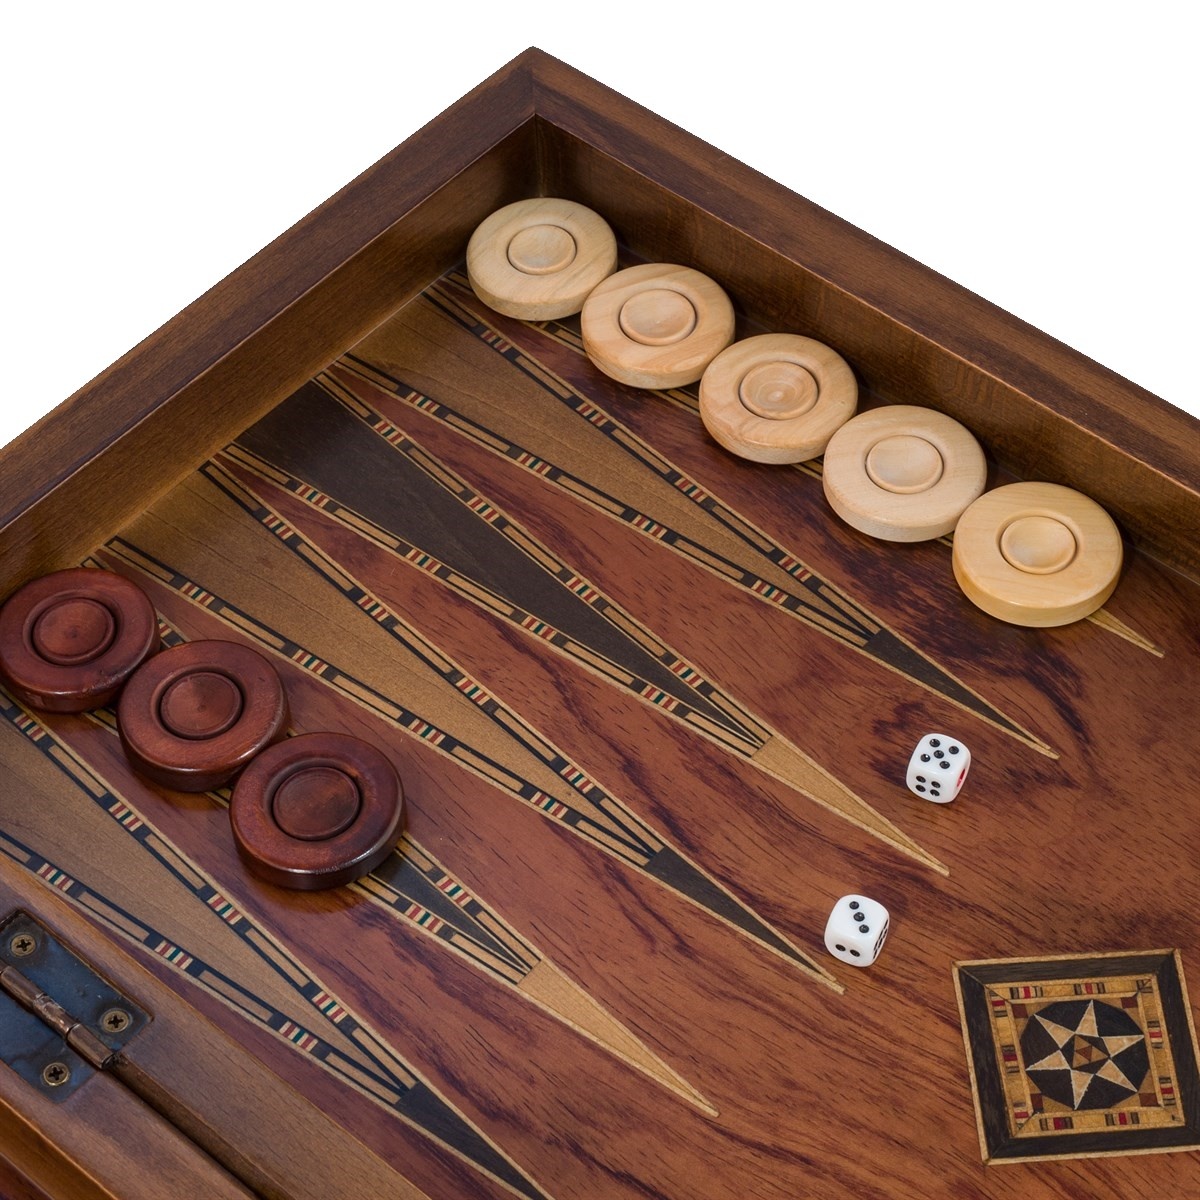 Helena Wood Art Handgemaakte Houten Backgammon Speelset van Hoge Kwaliteit - Tavla - 100% Hout - Luxe uitgave - TricTrac - 50 x 25 cm